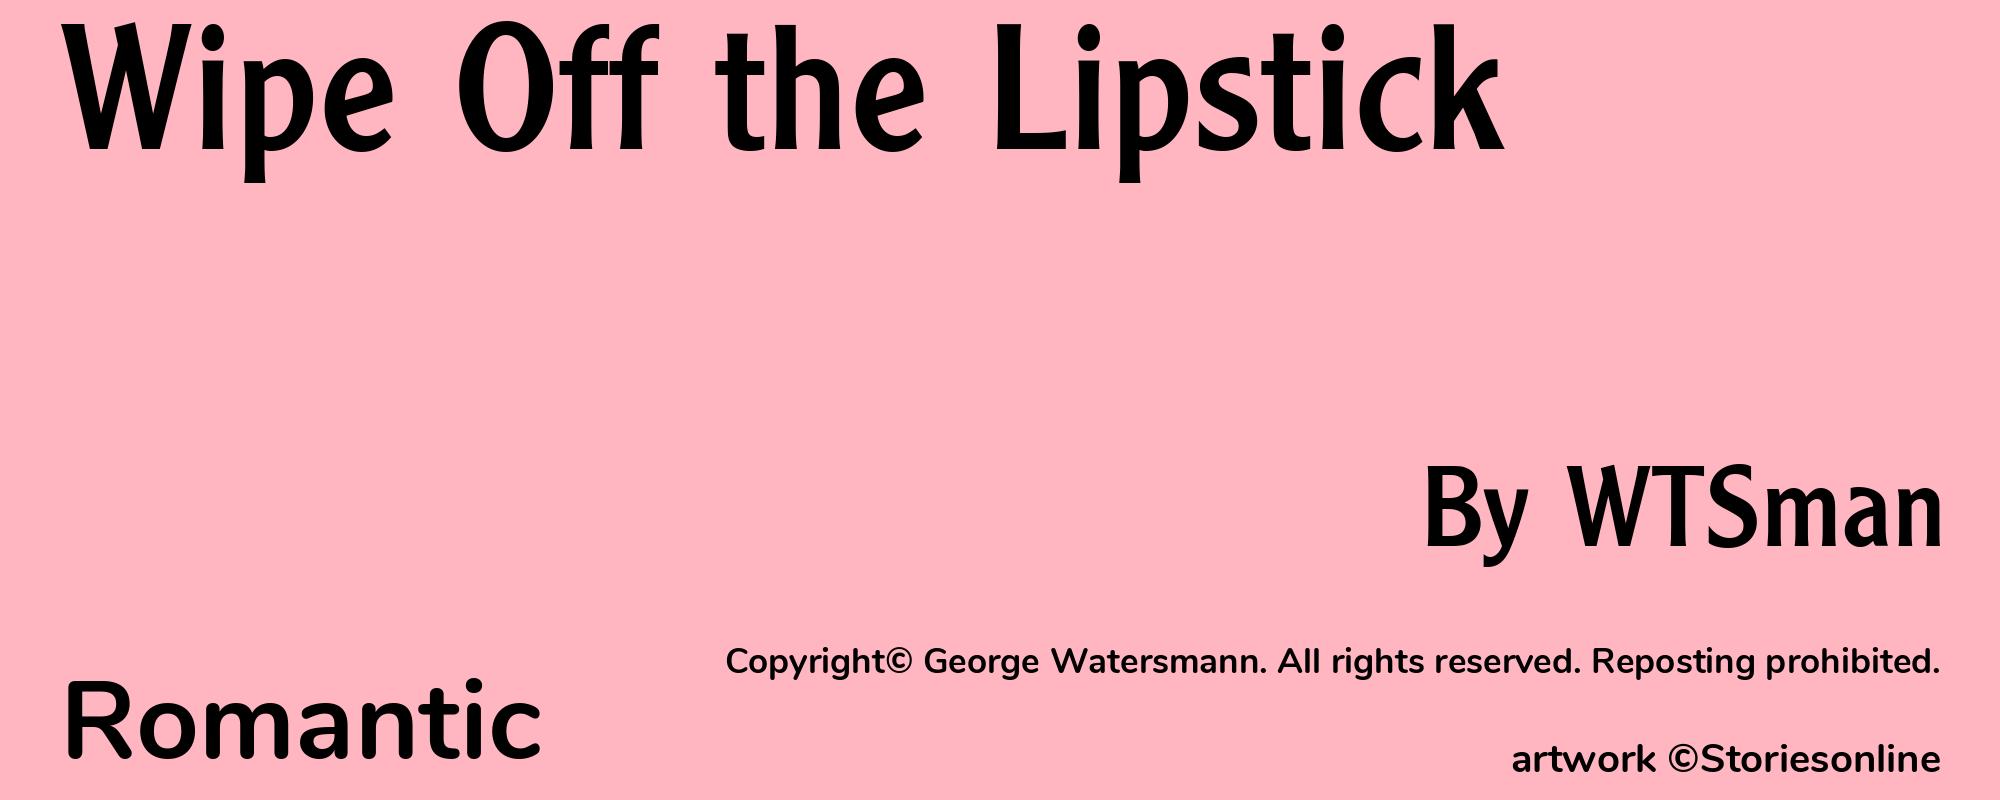 Wipe Off the Lipstick - Cover